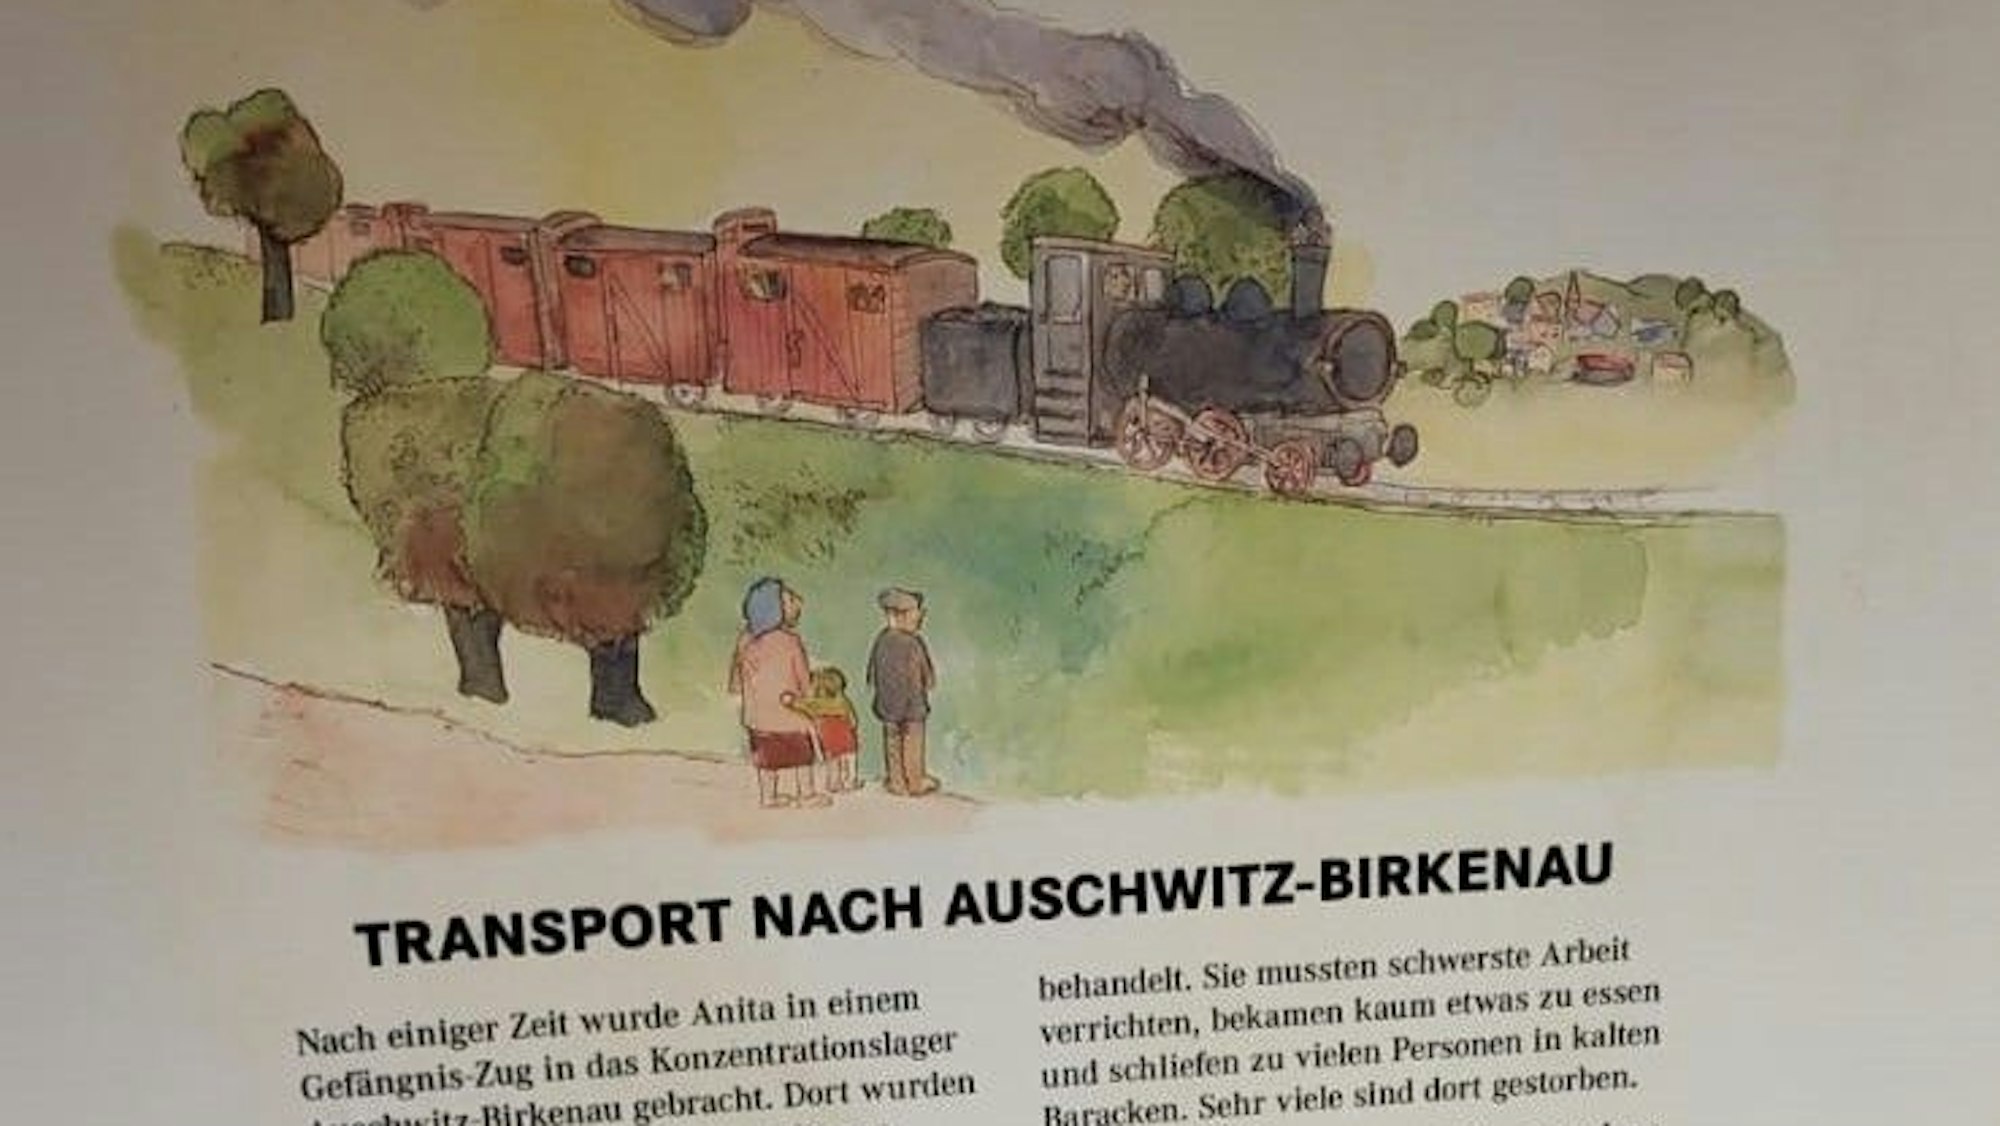 Eine Tafel zeigt ein gemaltes Bild mit einem Güterzug, darunter steht ein Text mit der Überschrift "Transport nach Auschwitz-Birkenau".